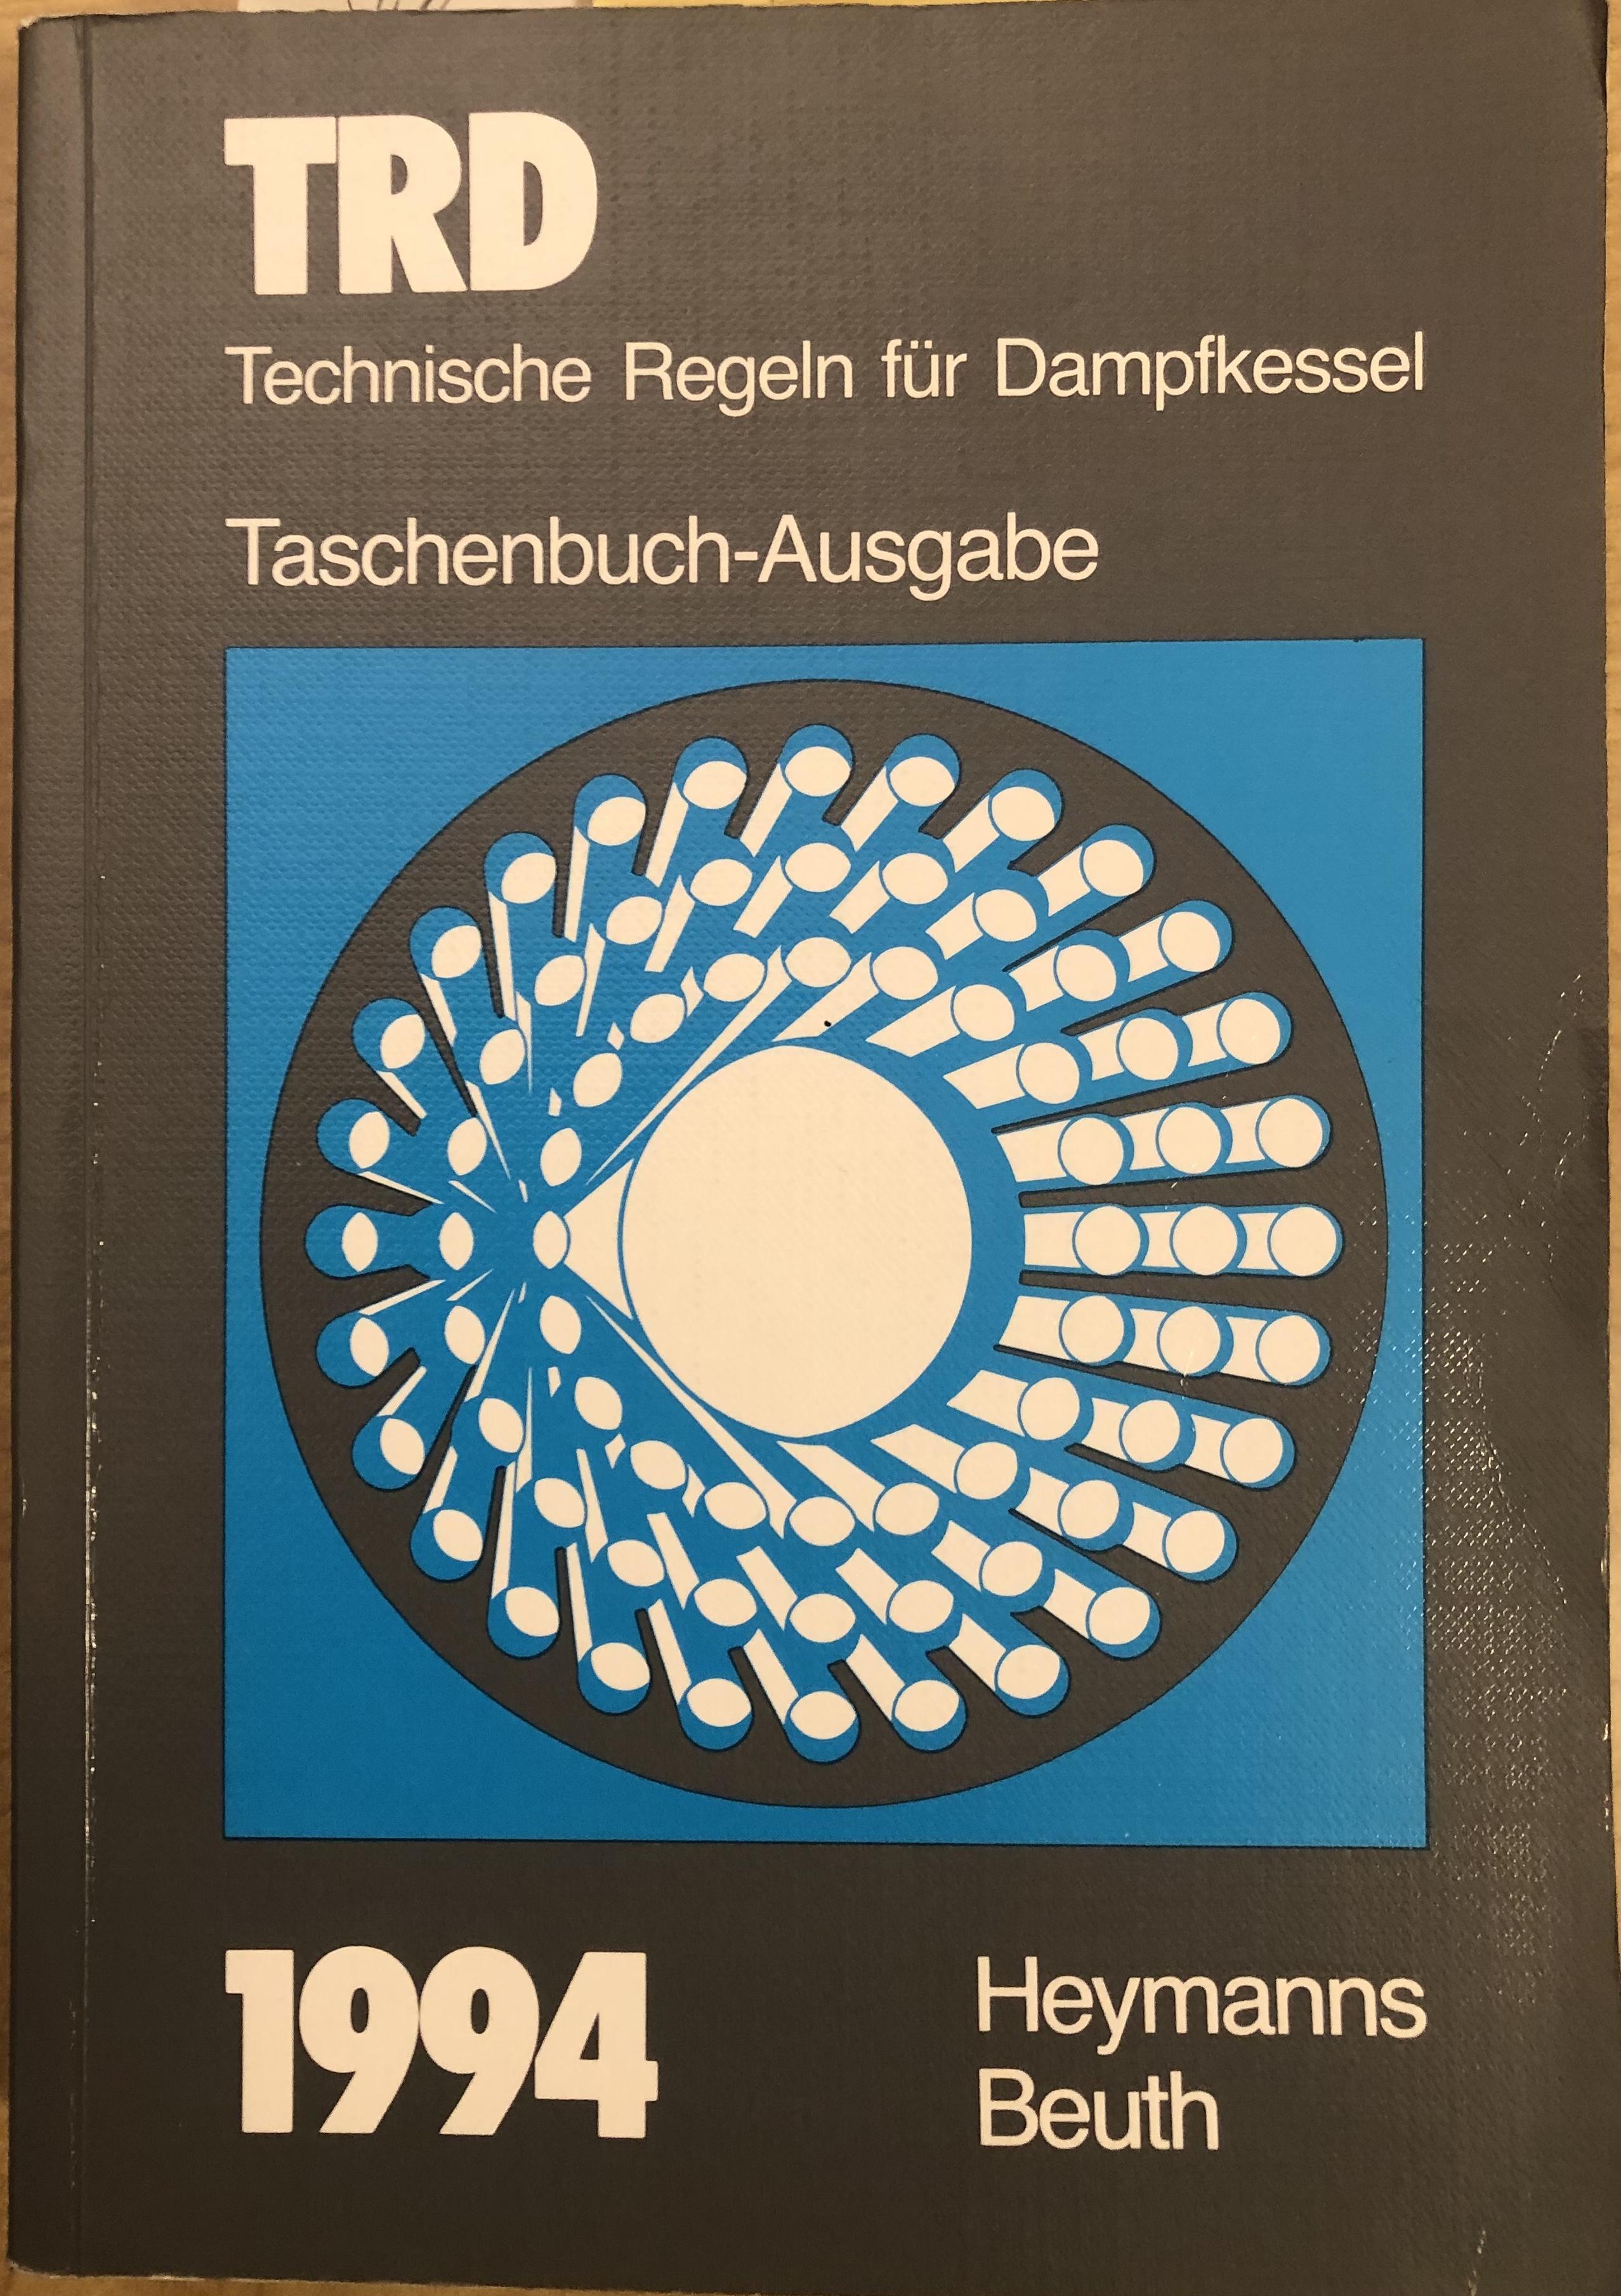 Technische Regeln für Dampfkessel (TRD), Taschenbuch-Ausgabe 1994